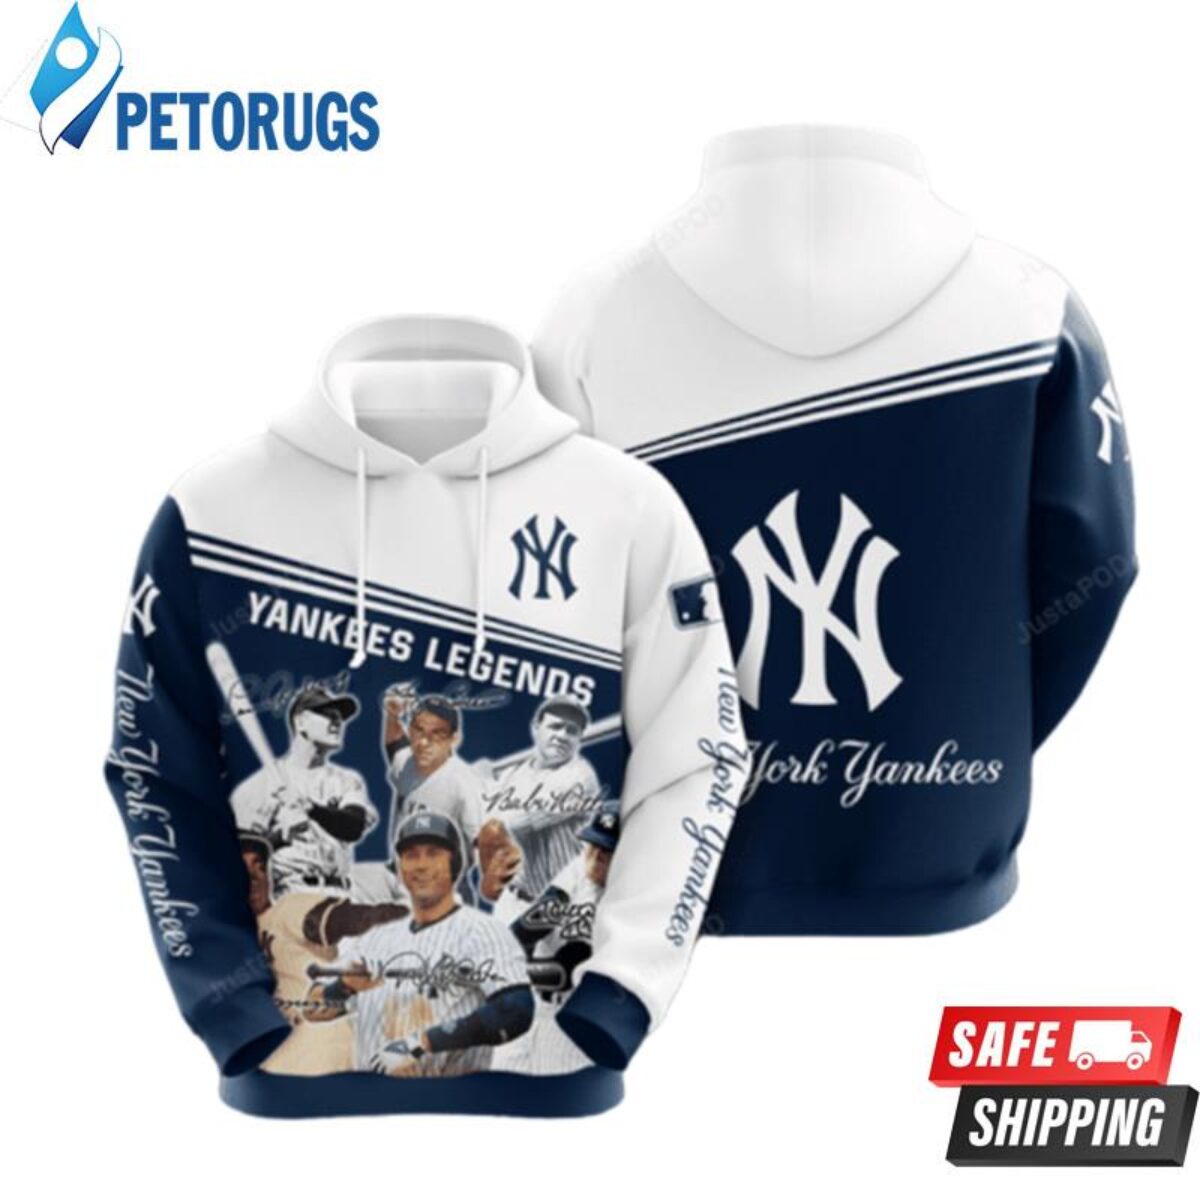 New York Yankees Legends 3D Hoodie - Peto Rugs